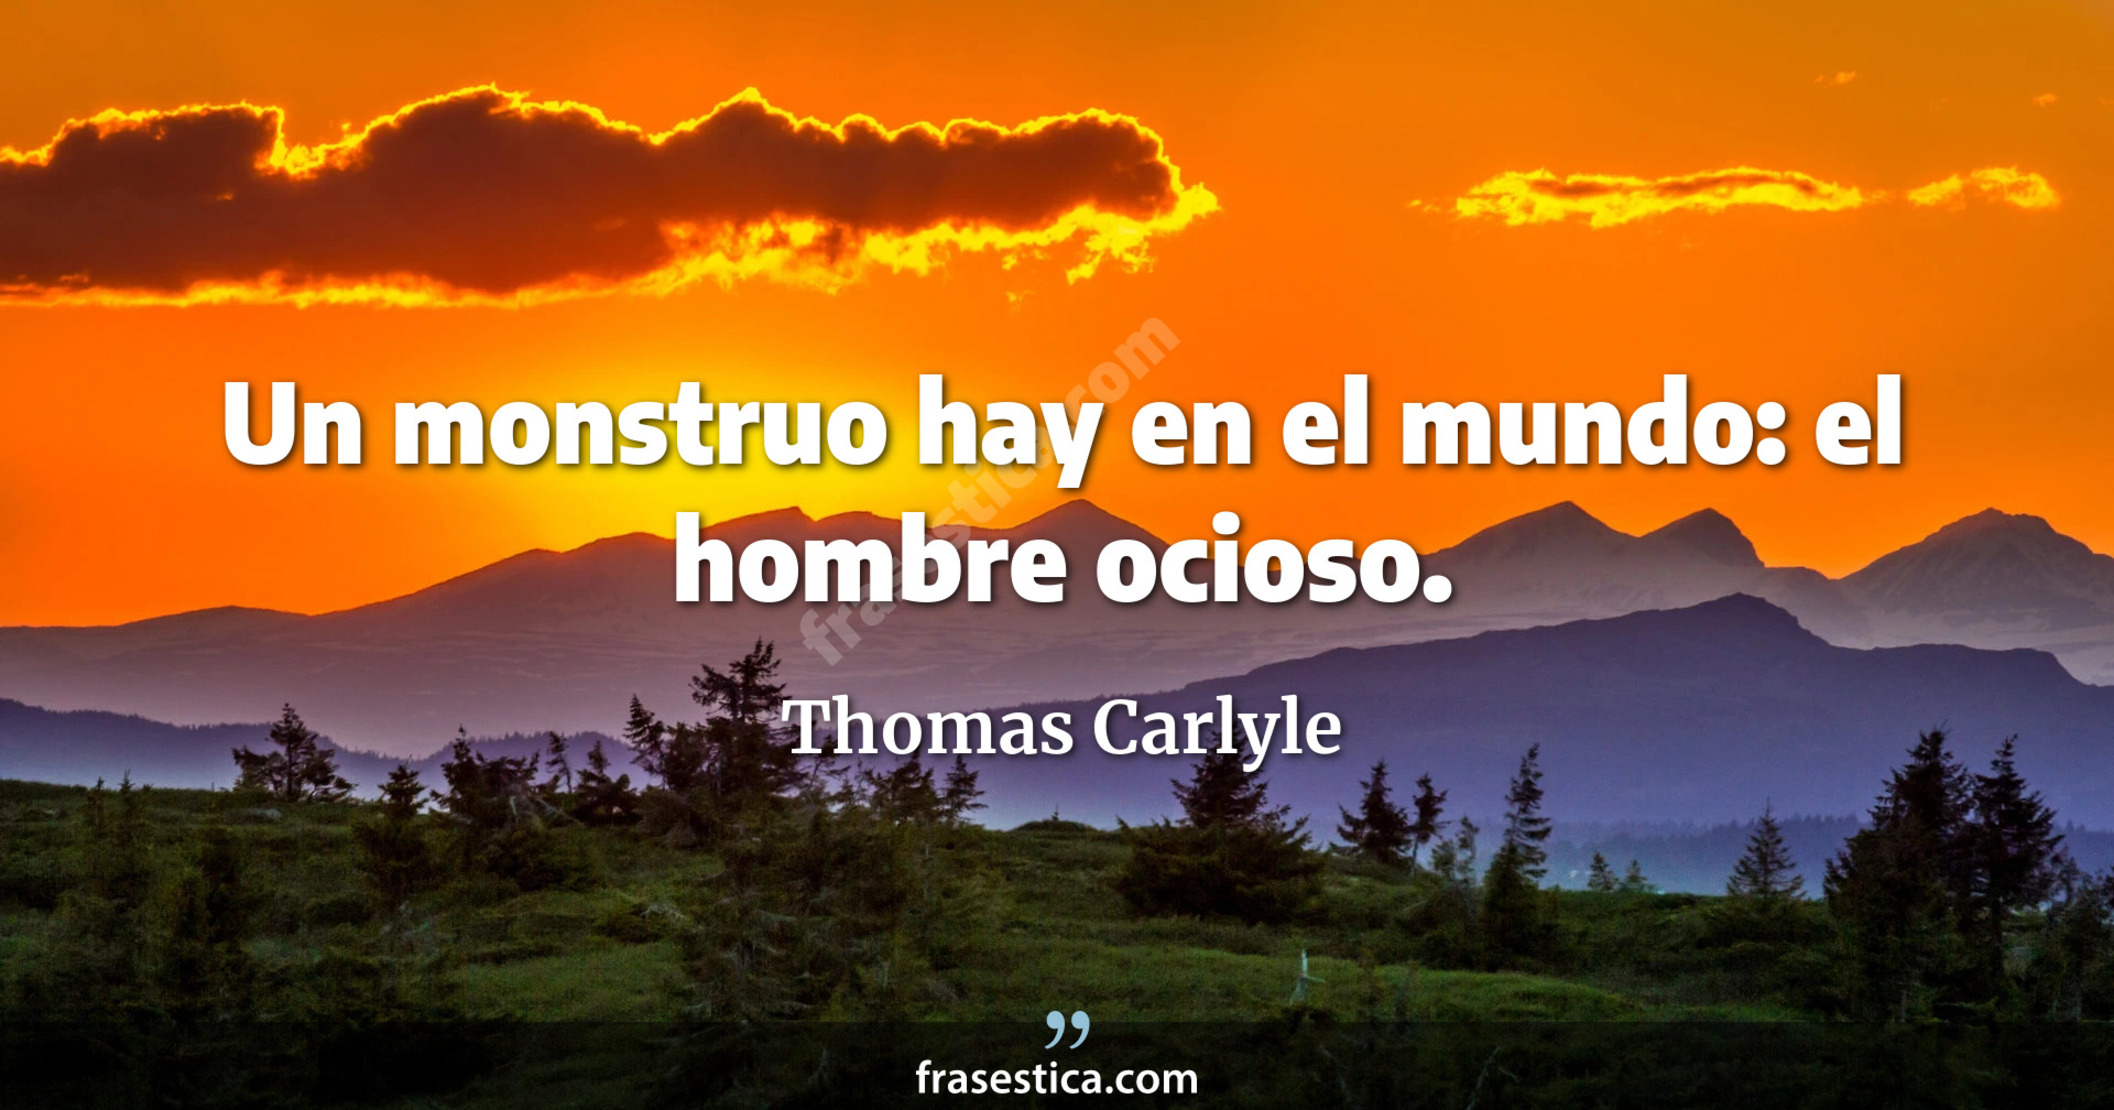 Un monstruo hay en el mundo: el hombre ocioso. - Thomas Carlyle